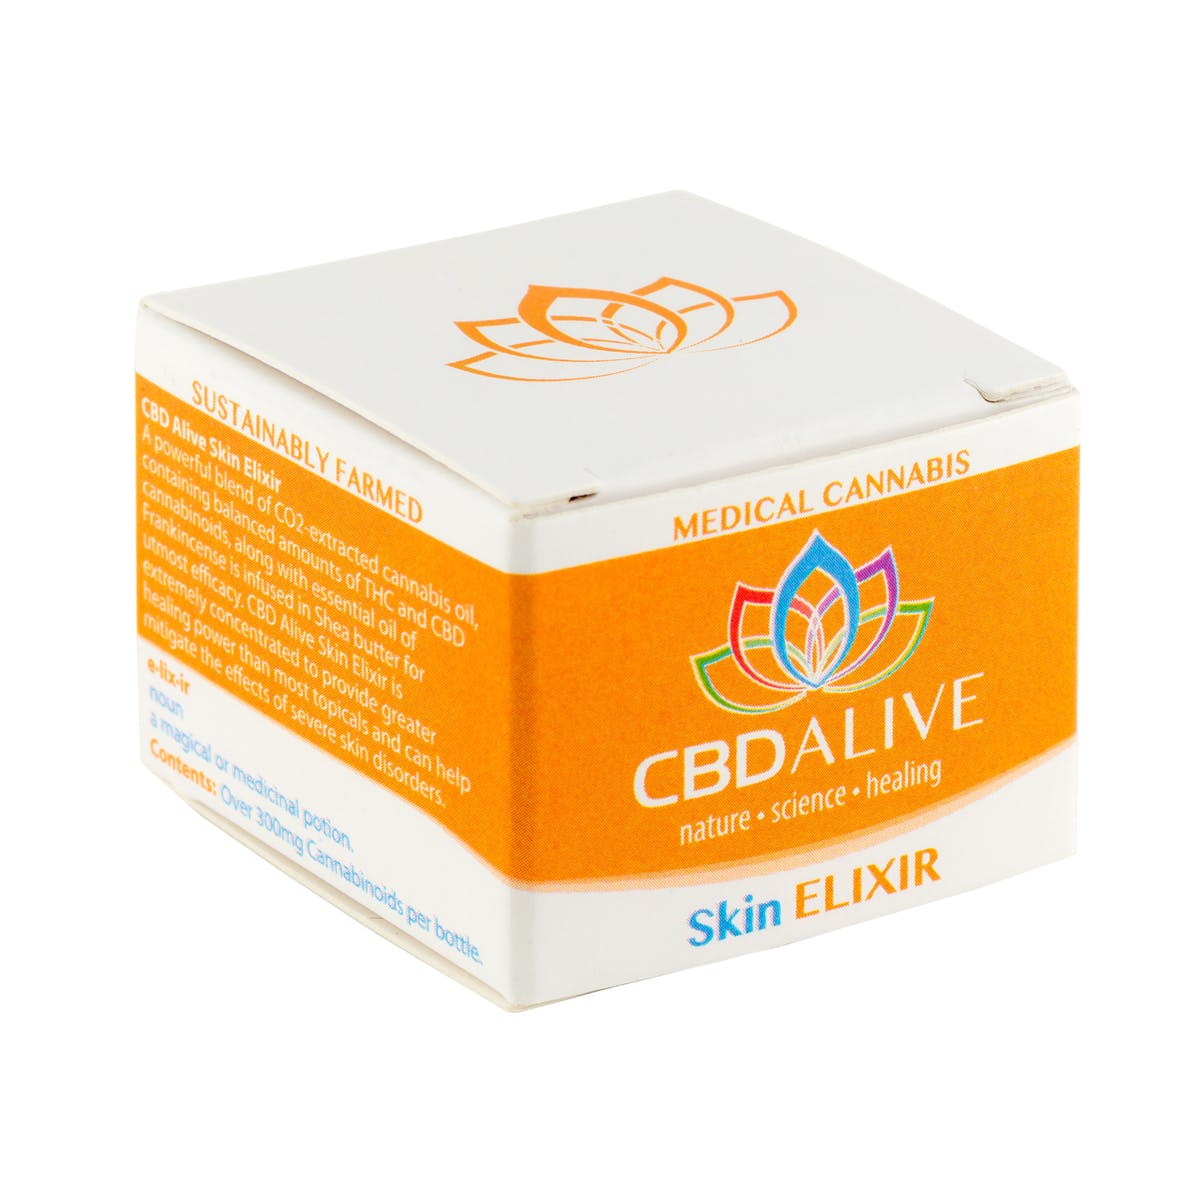 Skin Elixir 1:1 CBD/THC